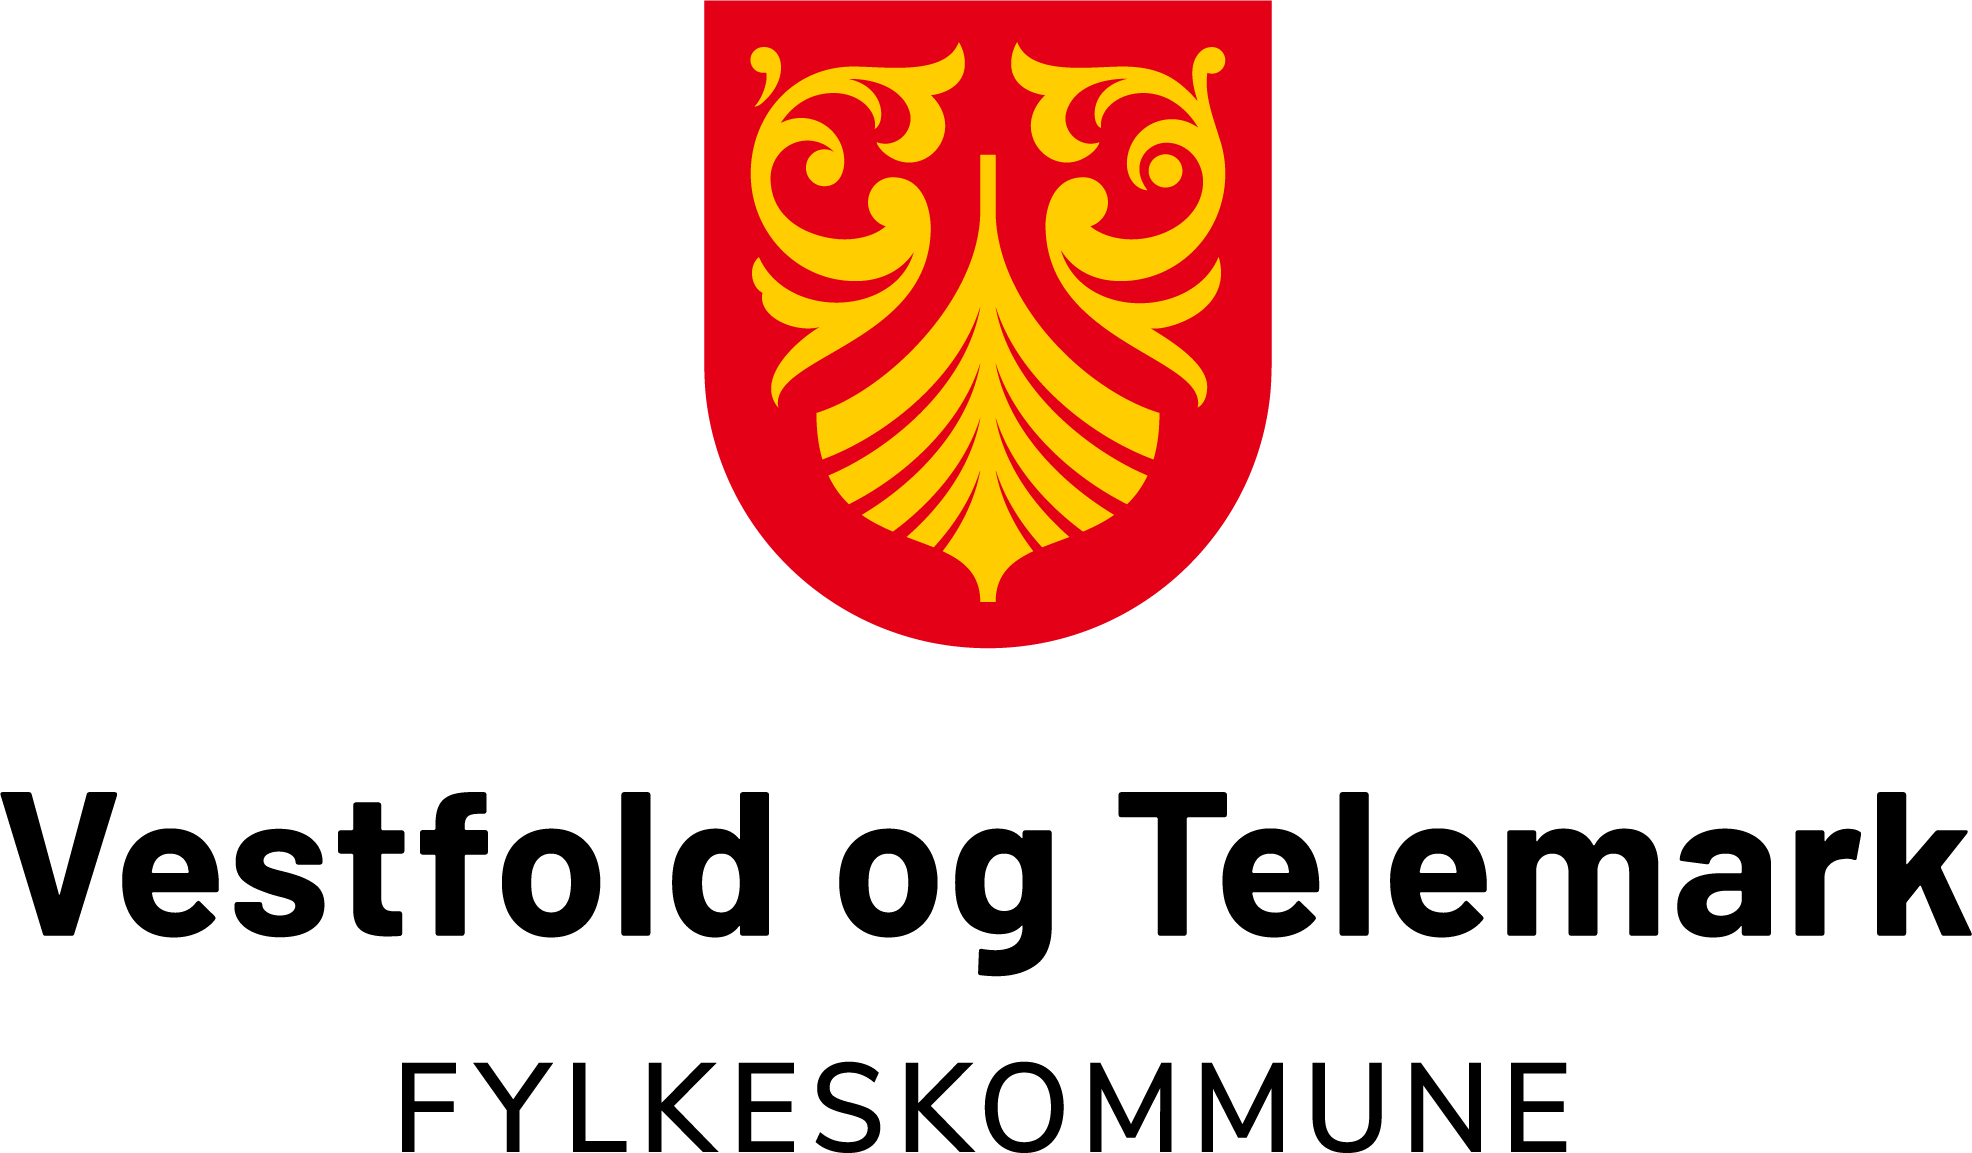 Vestfold og Telemark Fylkeskommune. Fylkesvåpen med rød bakgrunn, i midten et gult vikingskip og rundt gule rosemalerier.